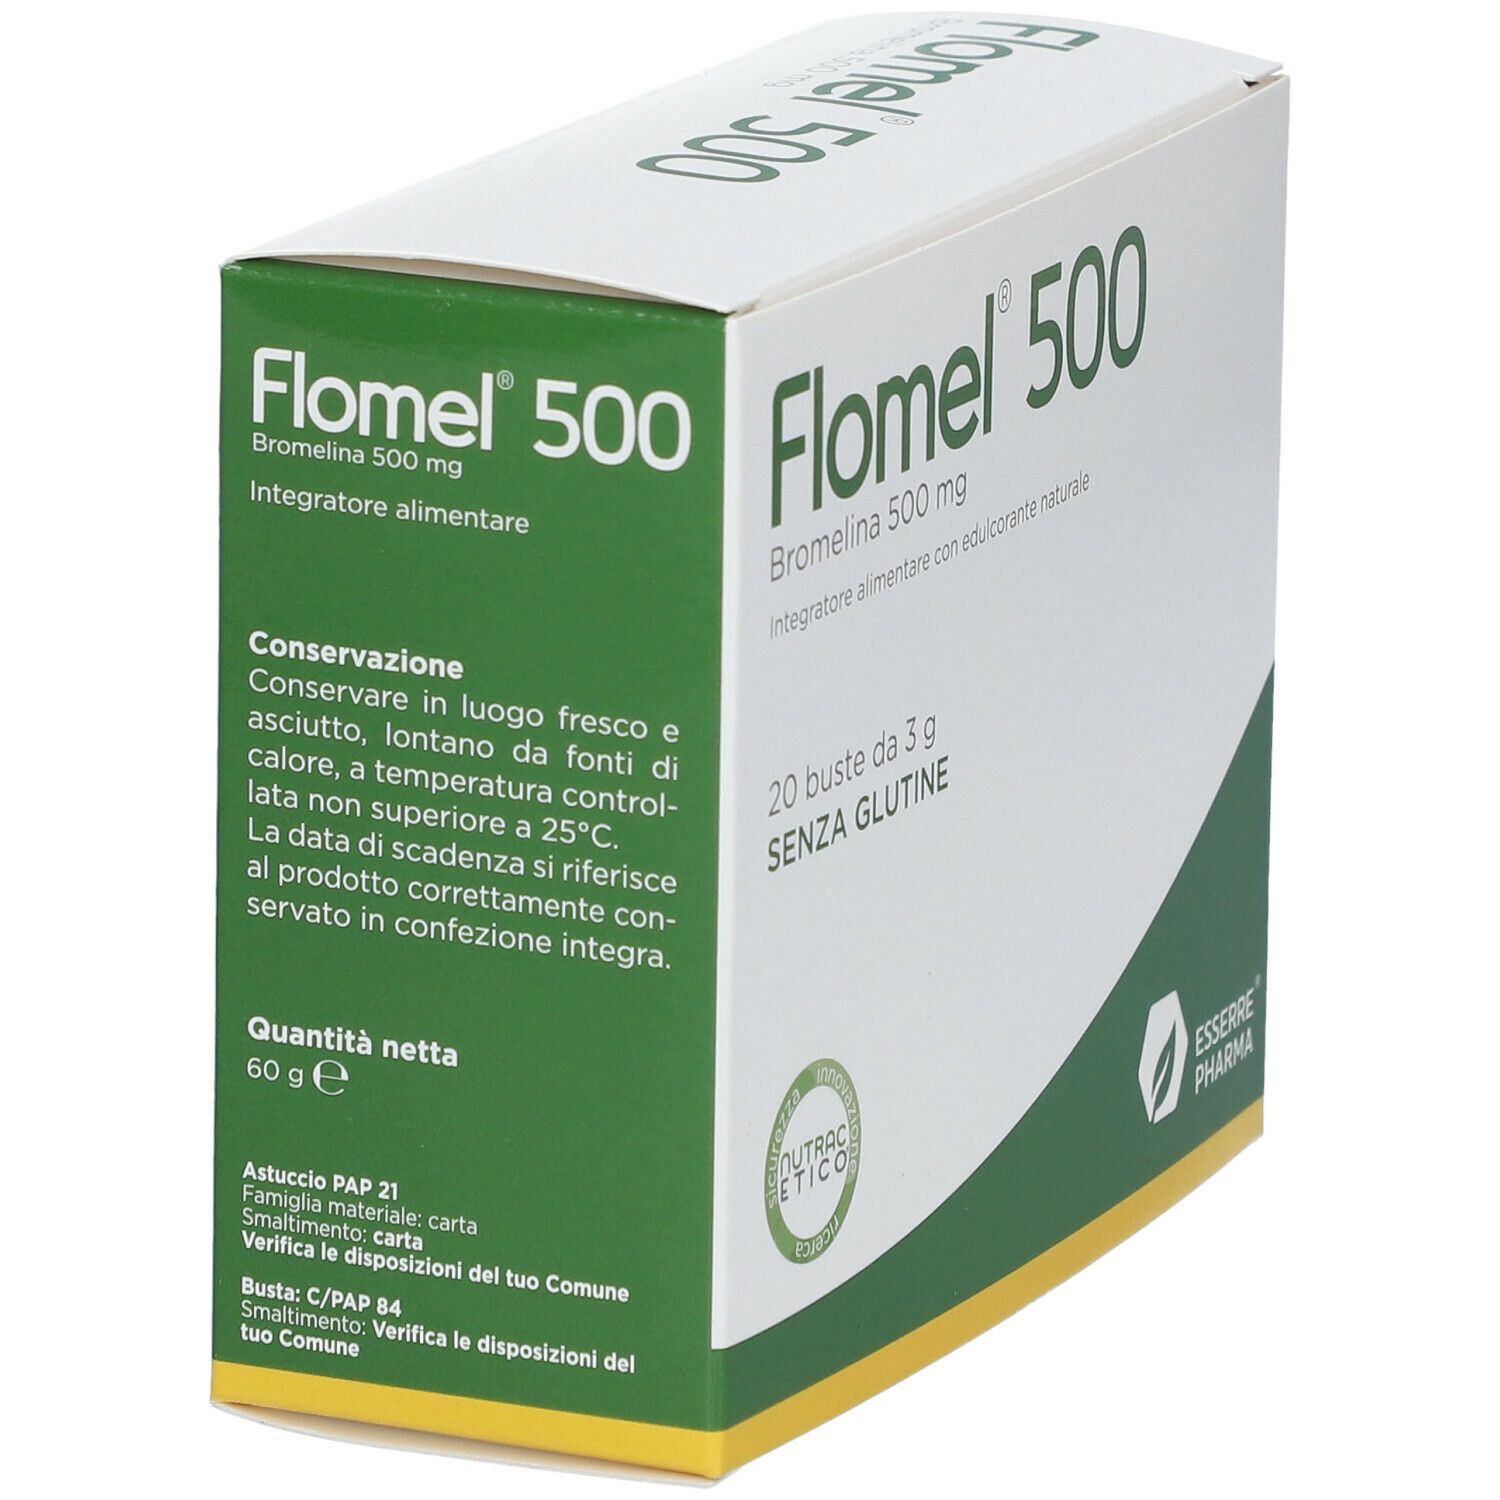 ESSERRE® PHARMA Flomel® 500